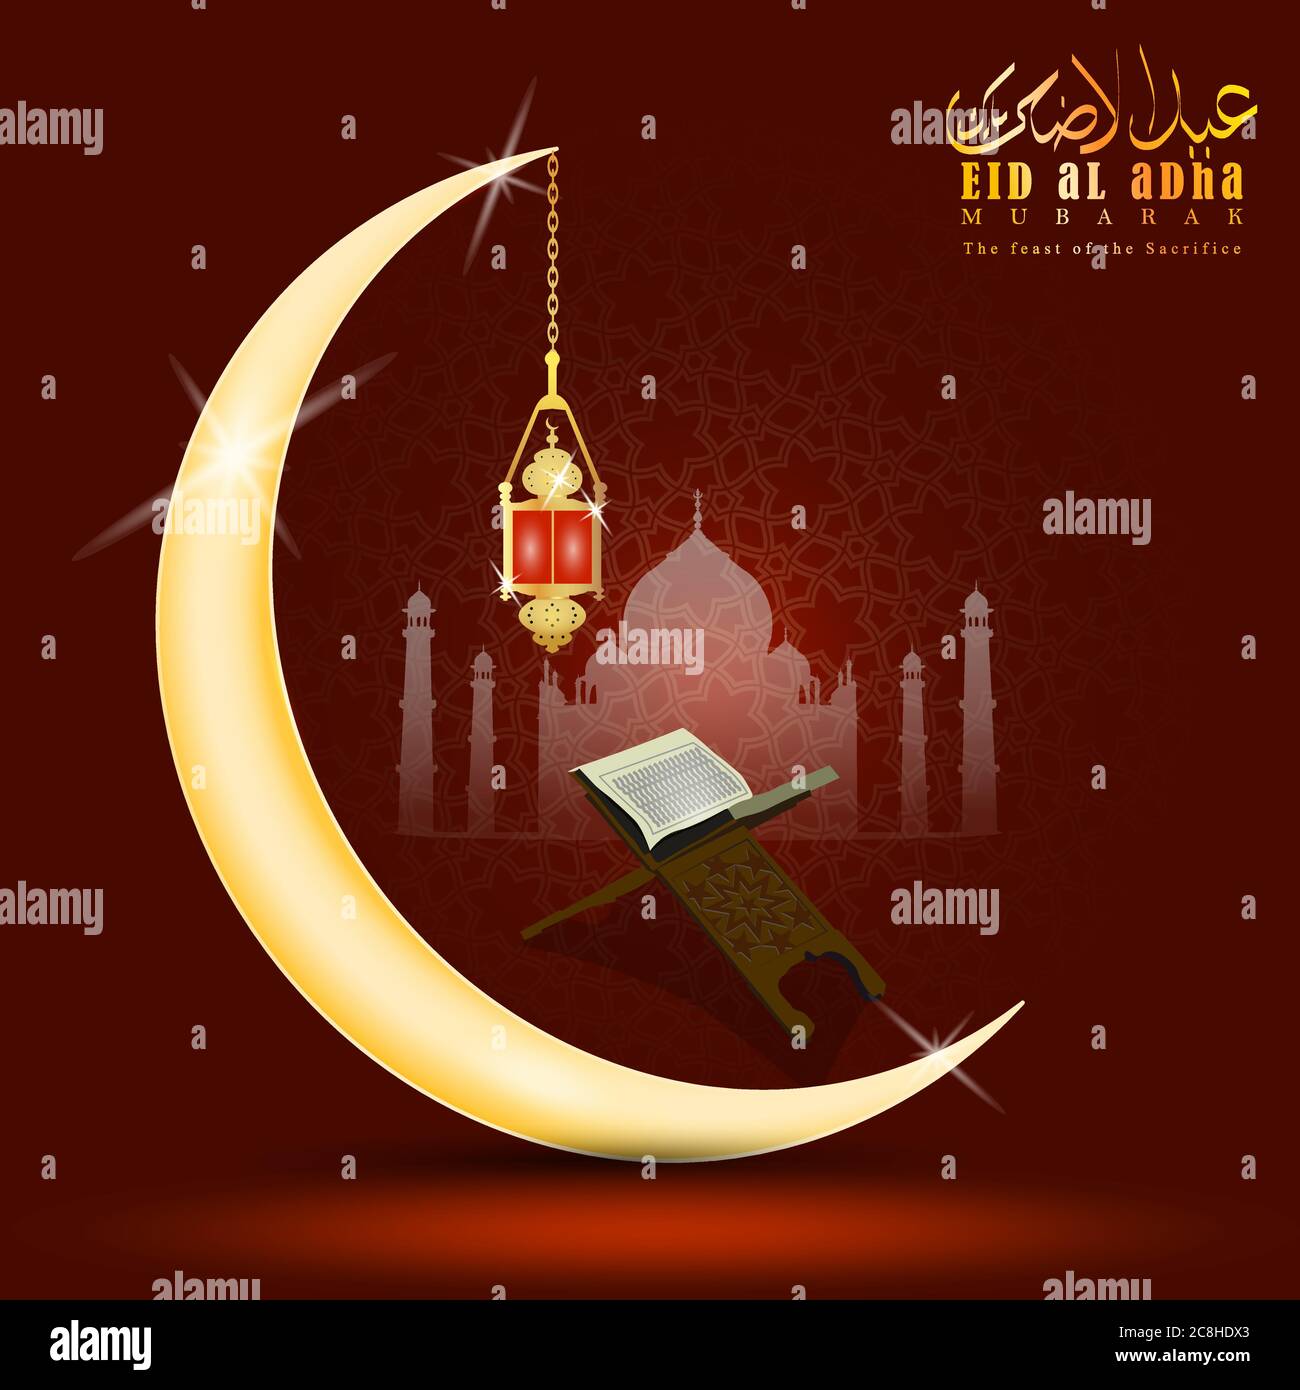 Vektor Illustration Eines Muslimischen Feiertags Eid Al Adha Eid Ul Adha Mubarak Wird In Urdu Kalligraphie Geschrieben Cresent Oder Mond Mit Laterne Stock Vektorgrafik Alamy